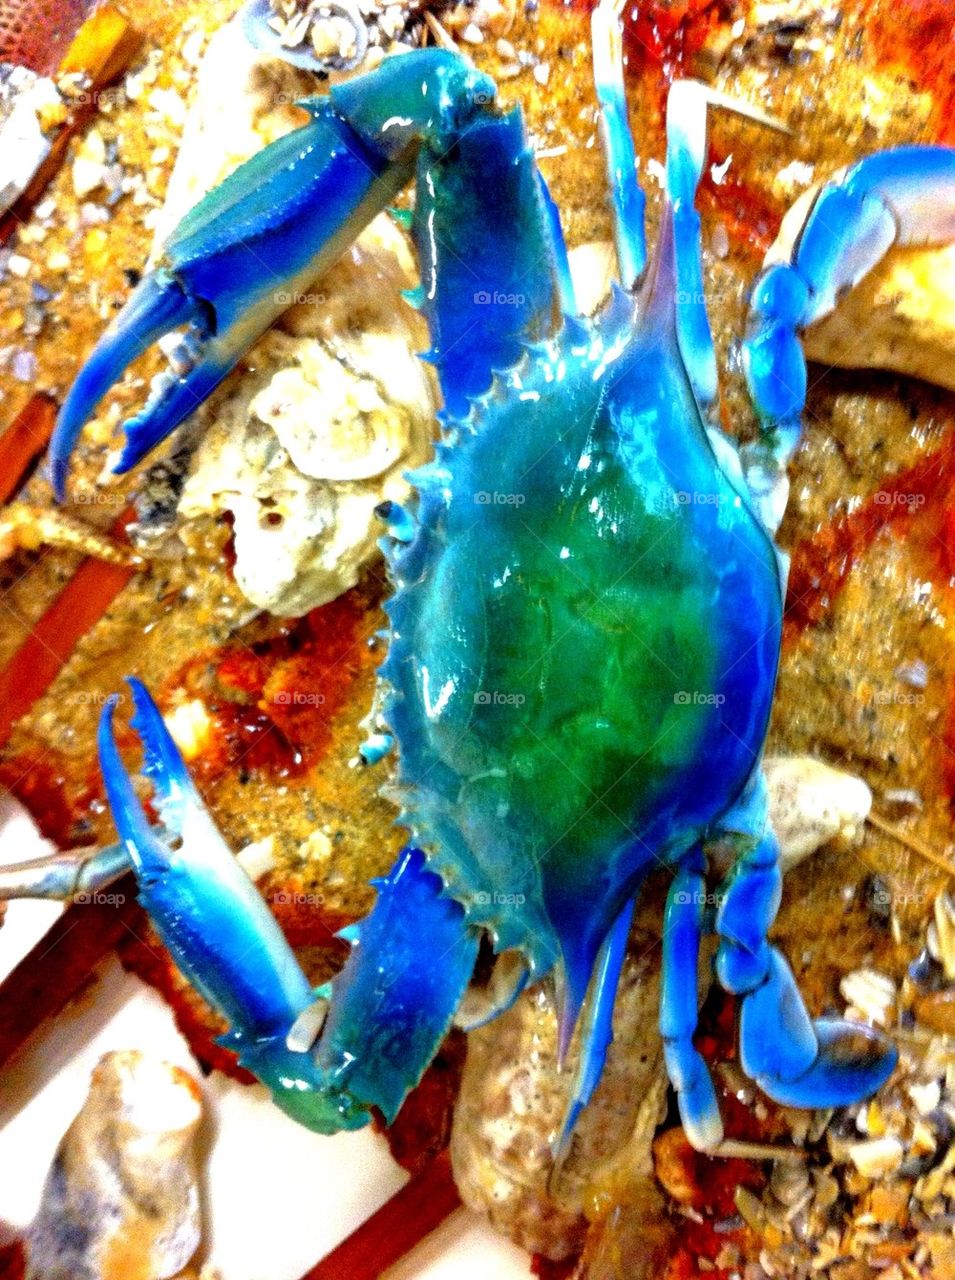 Blue crab taxidermy